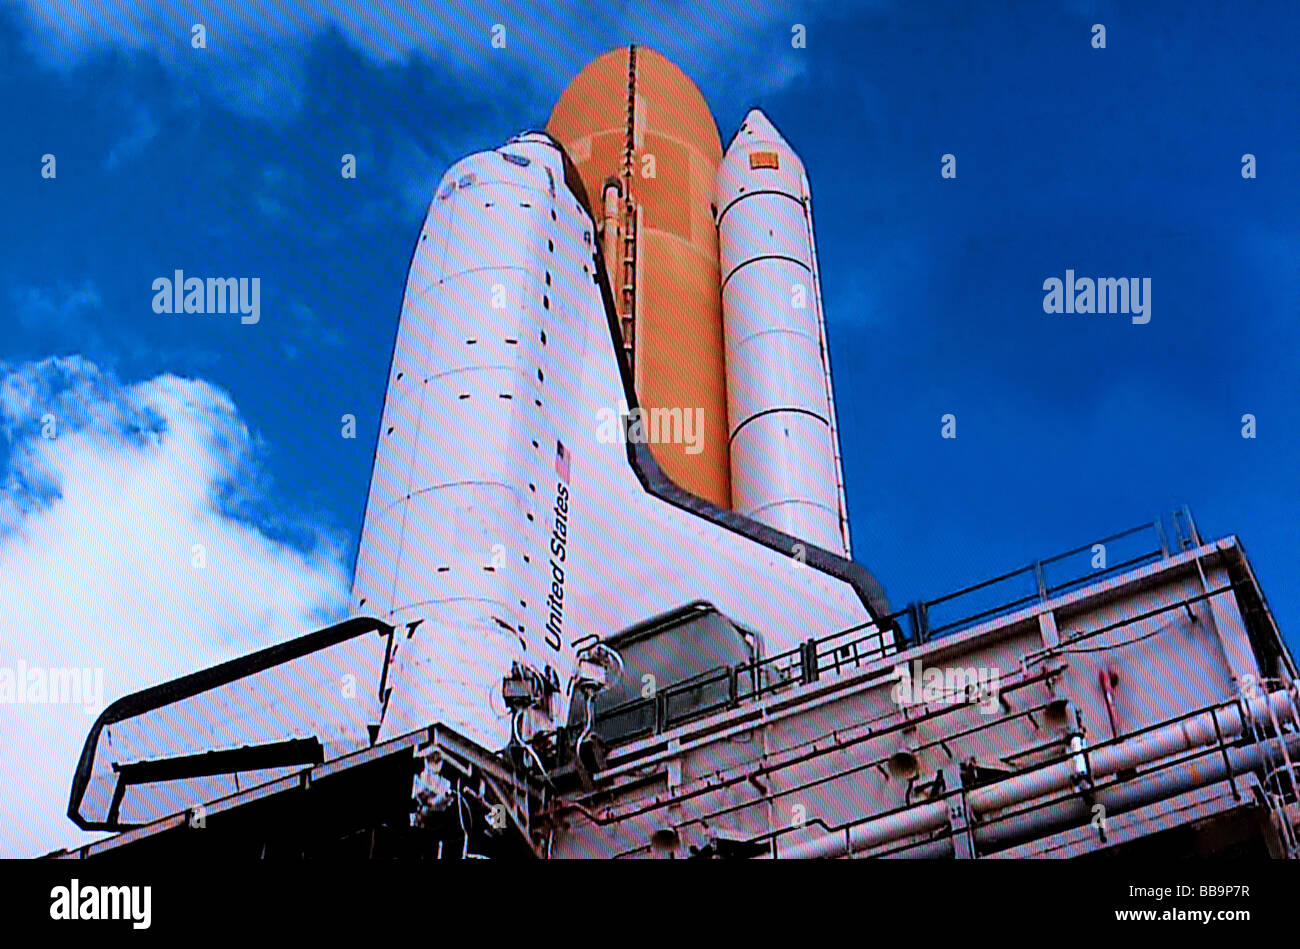 La NASA navetta Atlantis sulla rampa di lancio Foto Stock